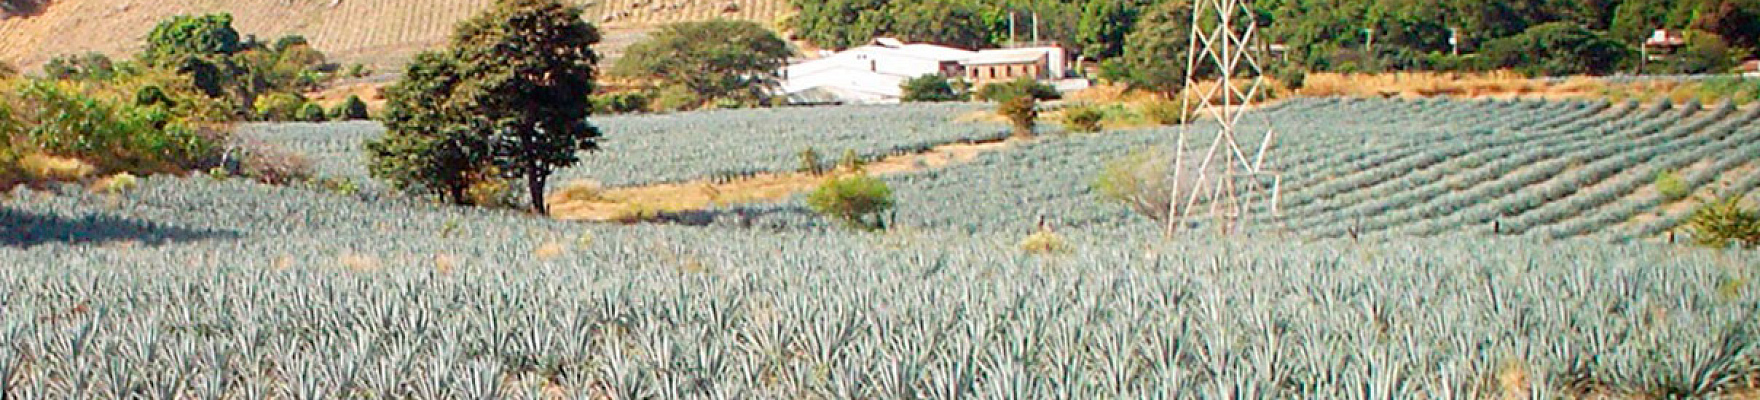 Tequila La Cofradía